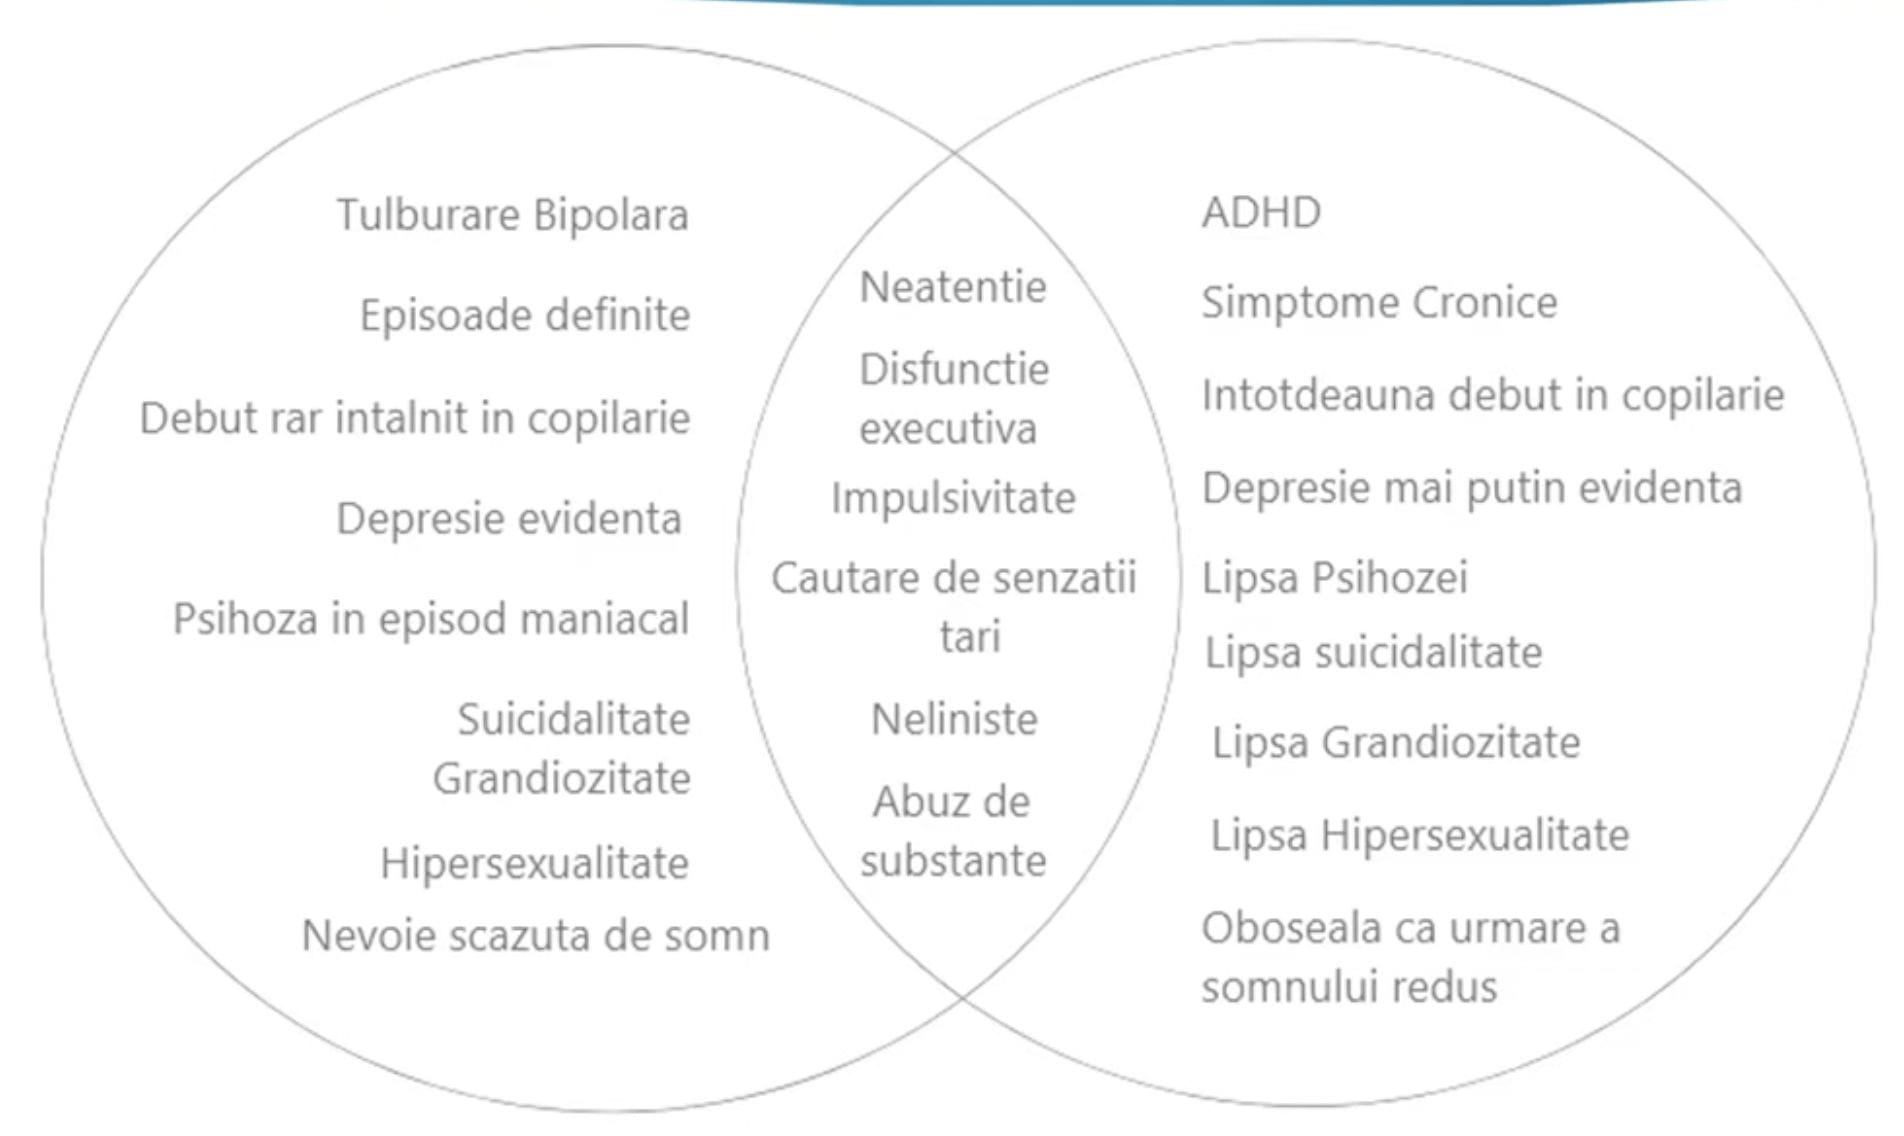 ADHD-ul la adult și tulburarea bipolară